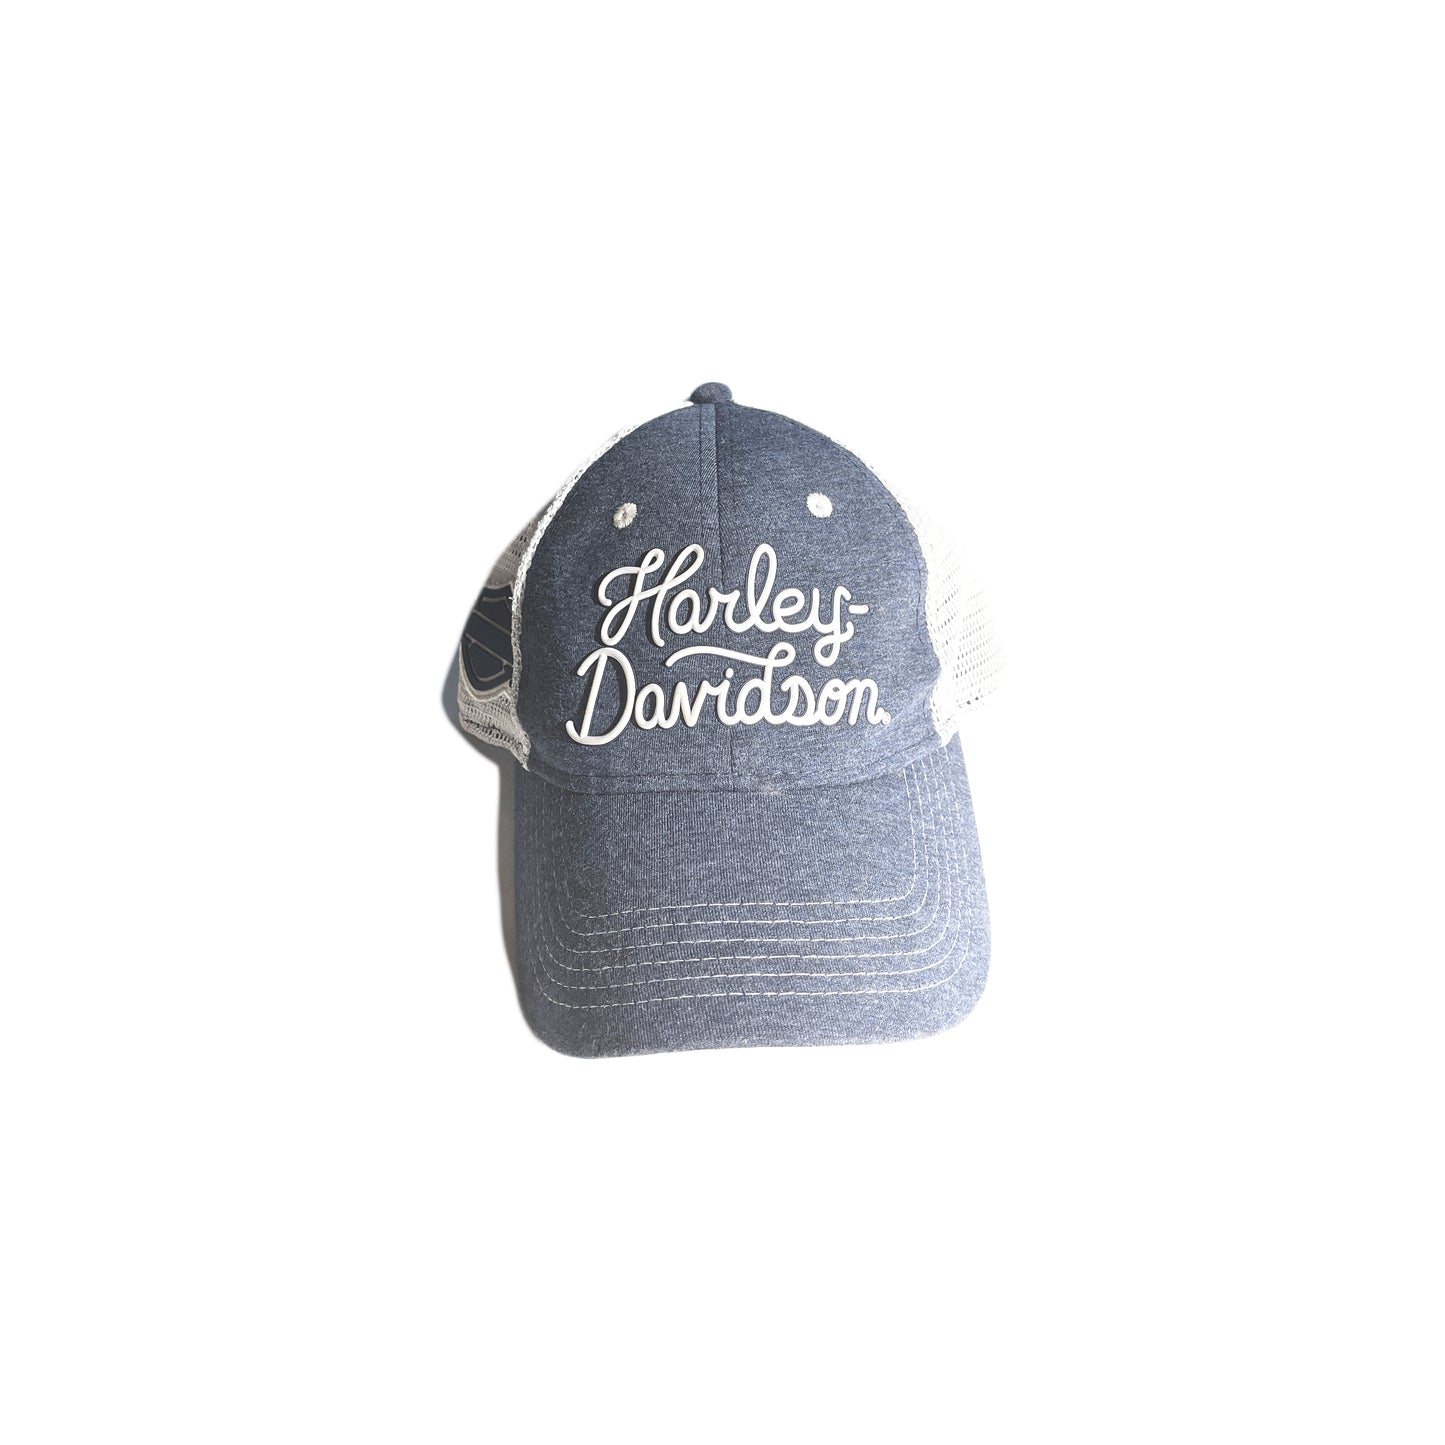 Vintage Harley Davidson Hat